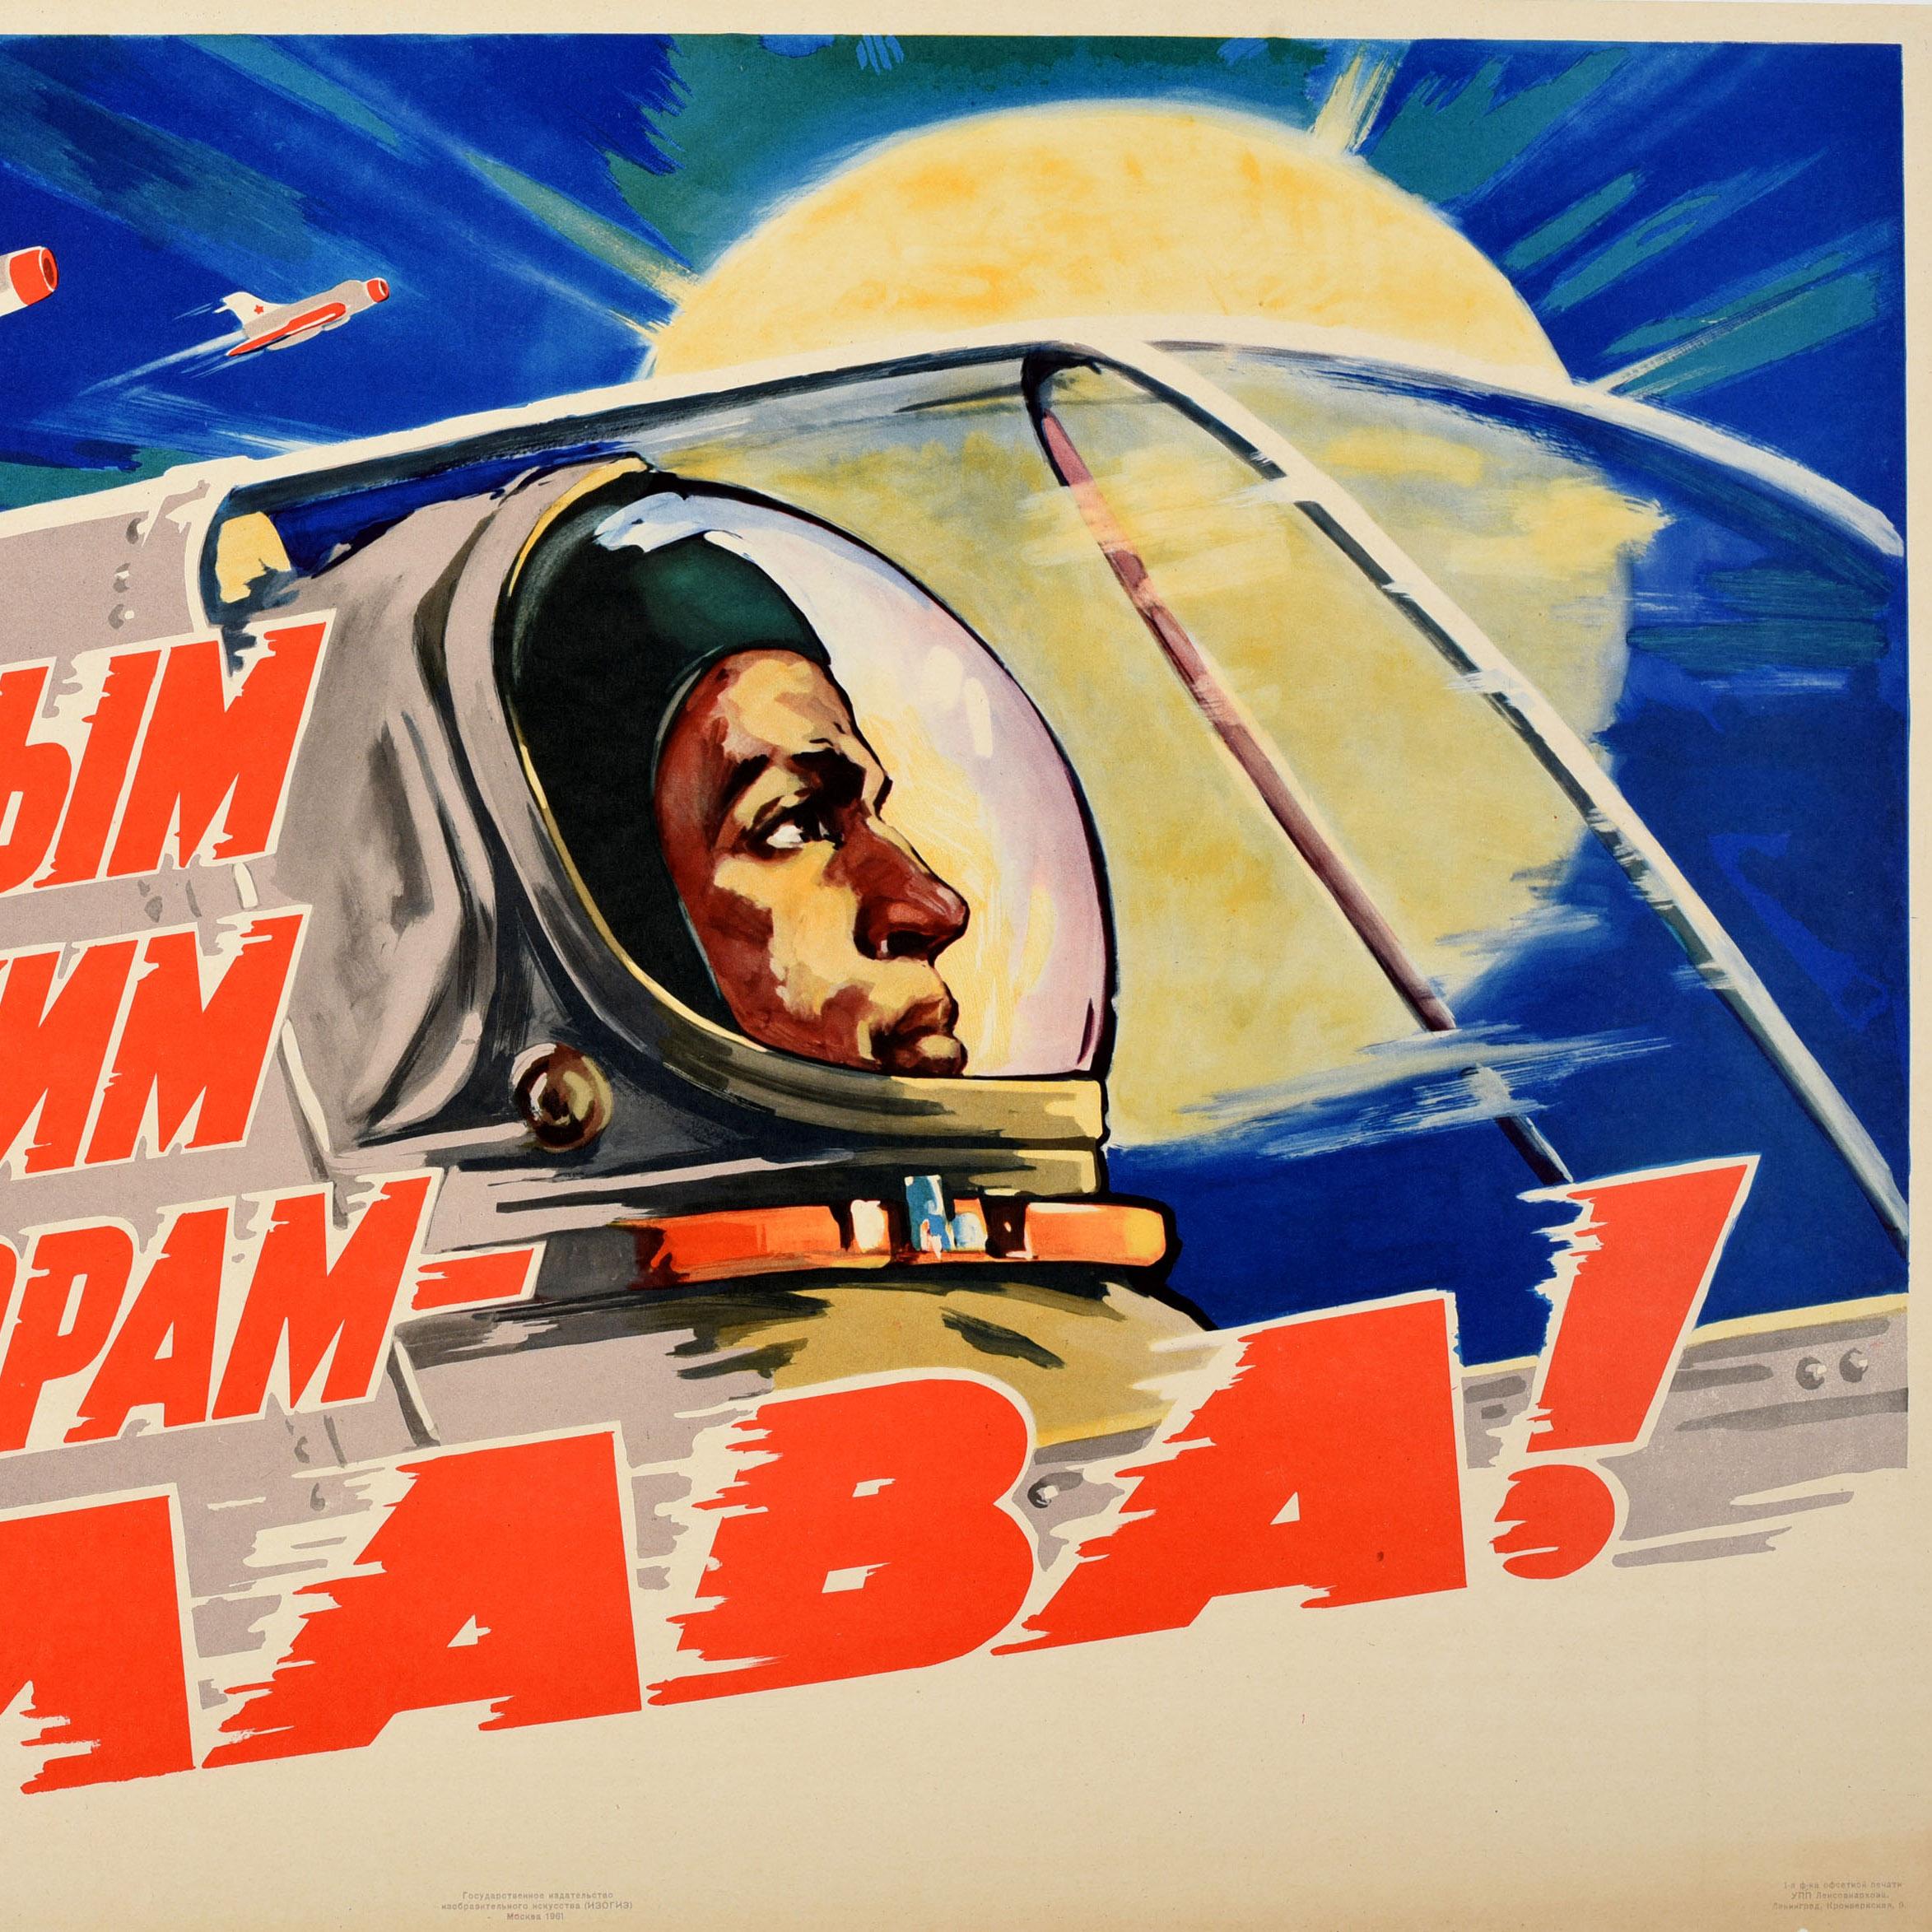 Originales sowjetisches Propagandaplakat - Ruhm den tapferen sowjetischen Fliegern! / Отважным Советским Авиаторам - Слава! Dynamische Grafik, die einen Piloten zeigt, der mit hoher Geschwindigkeit mit anderen Flugzeugen fliegt, und eine helle